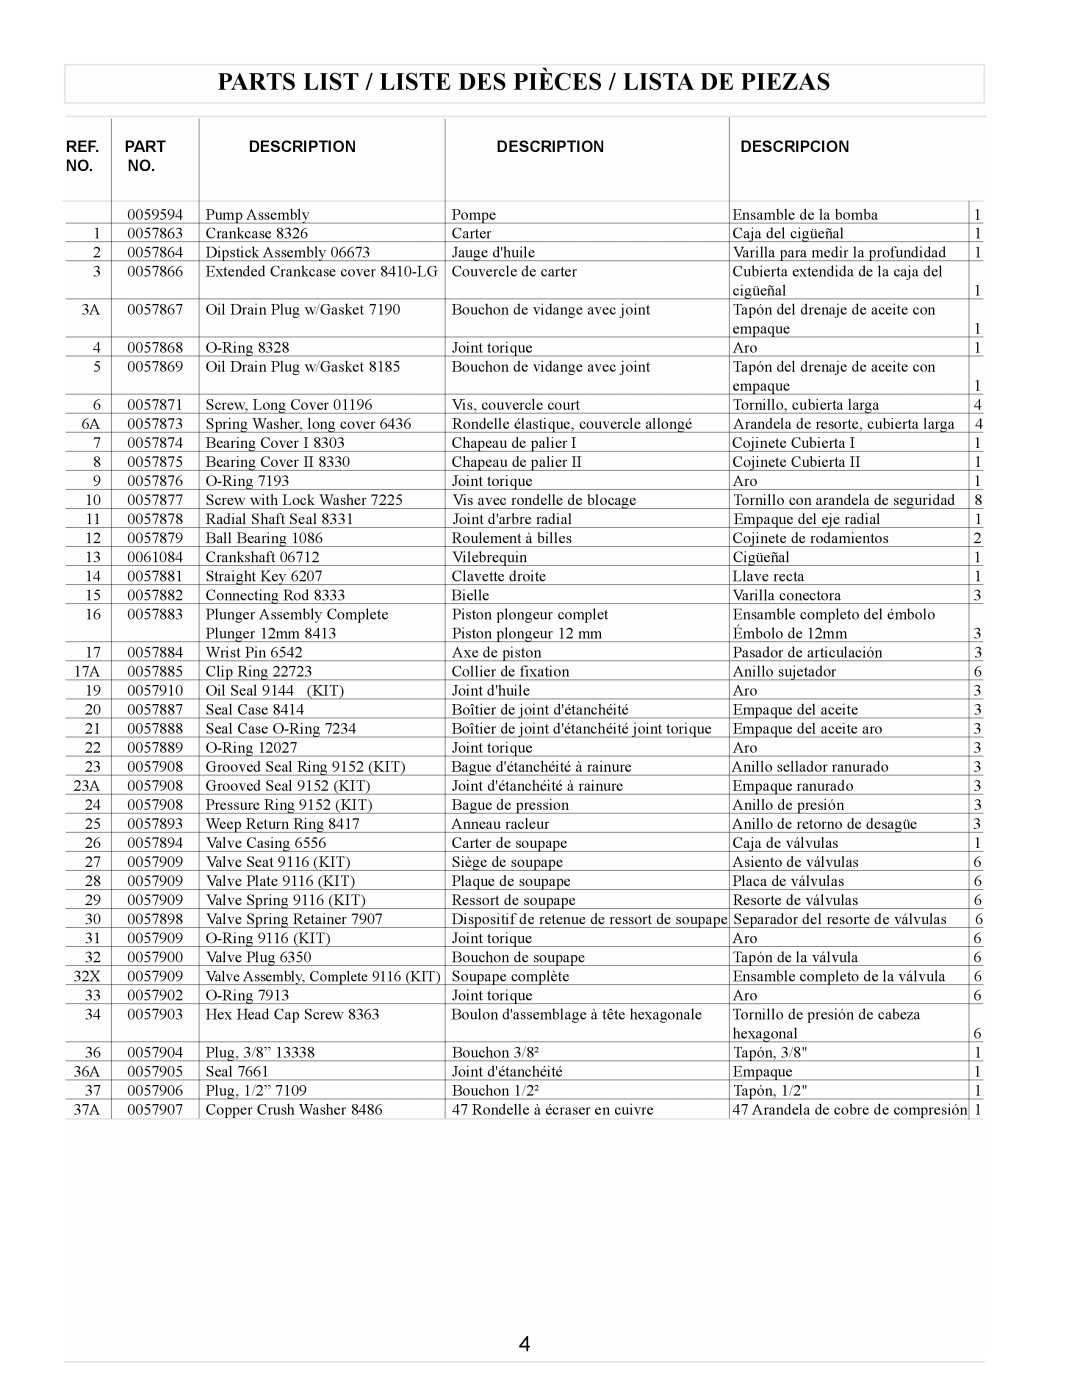 Coleman Powermate, PW0923500 manual Parts List / Liste Des Pièces / Lista De Piezas, Description, Descripcion 